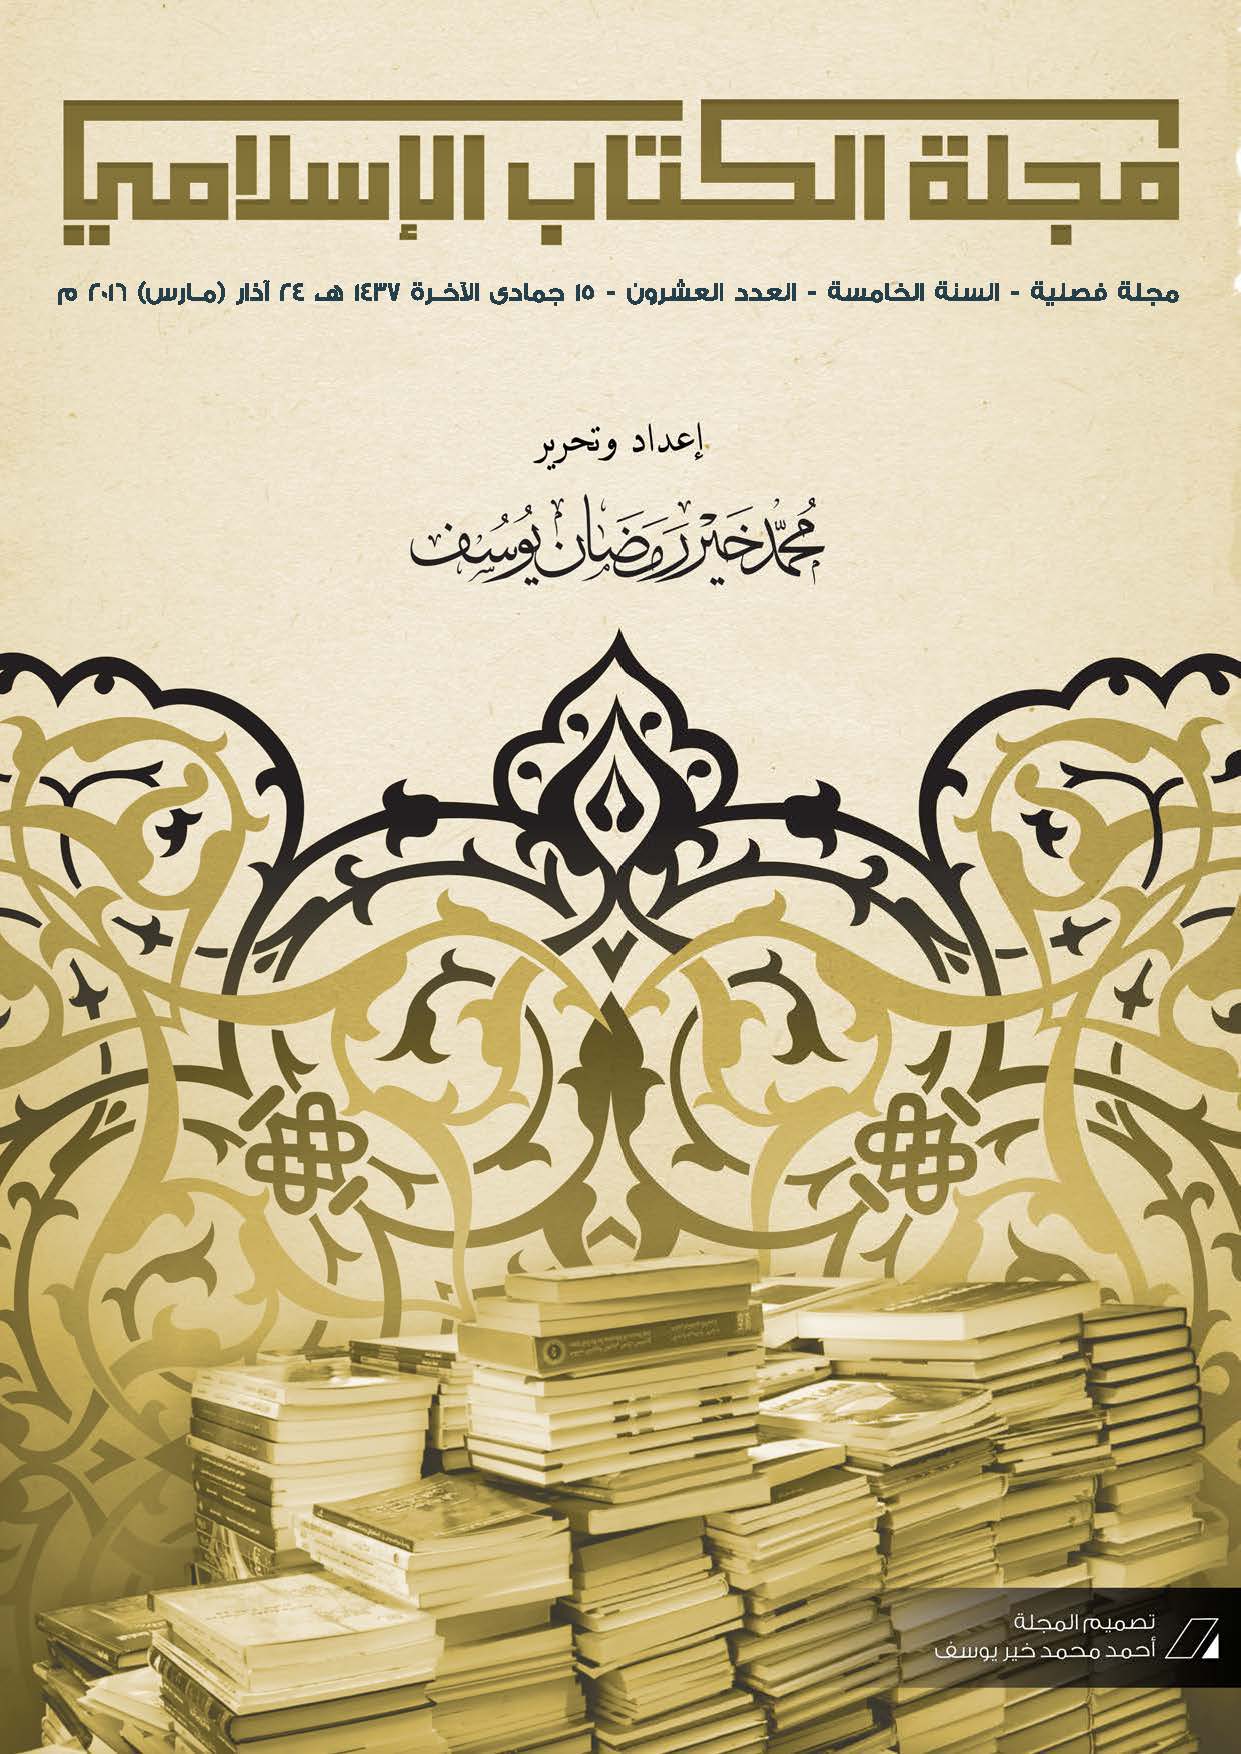 غلاف العدد العشرون من مجلة الكتاب الإسلامي